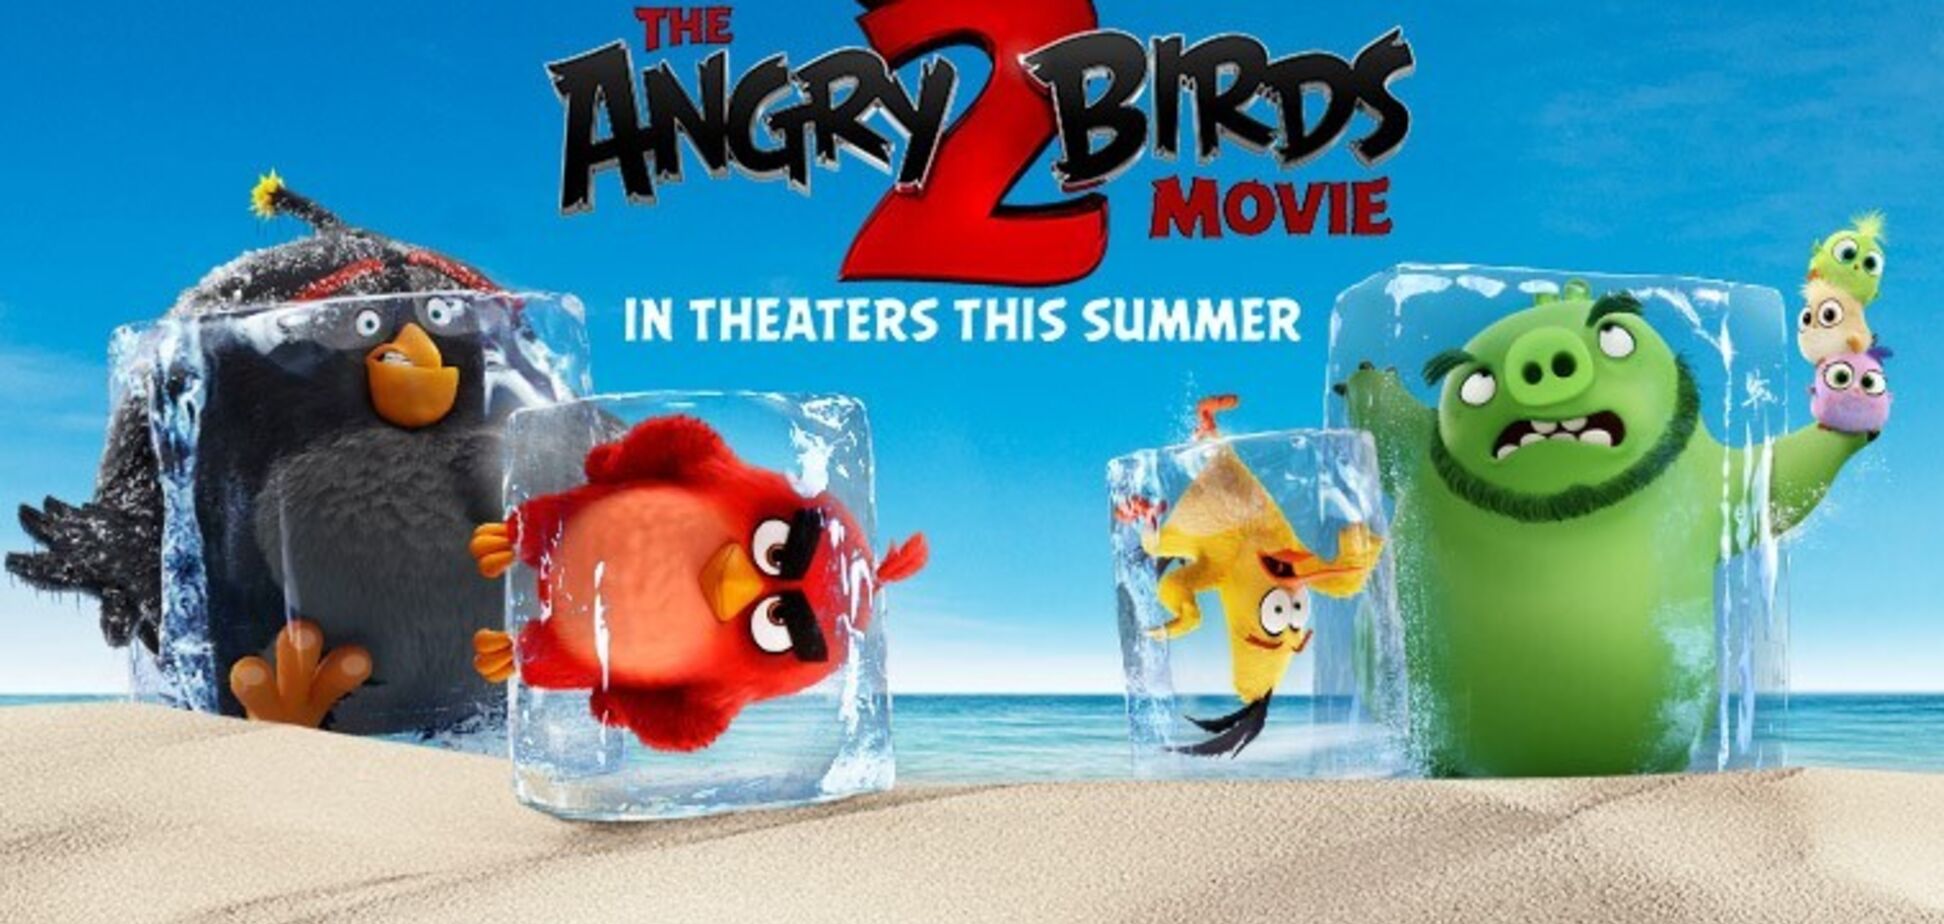 'Angry Birds в кино 2': смотреть онлайн, трейлер, актеры, сюжет